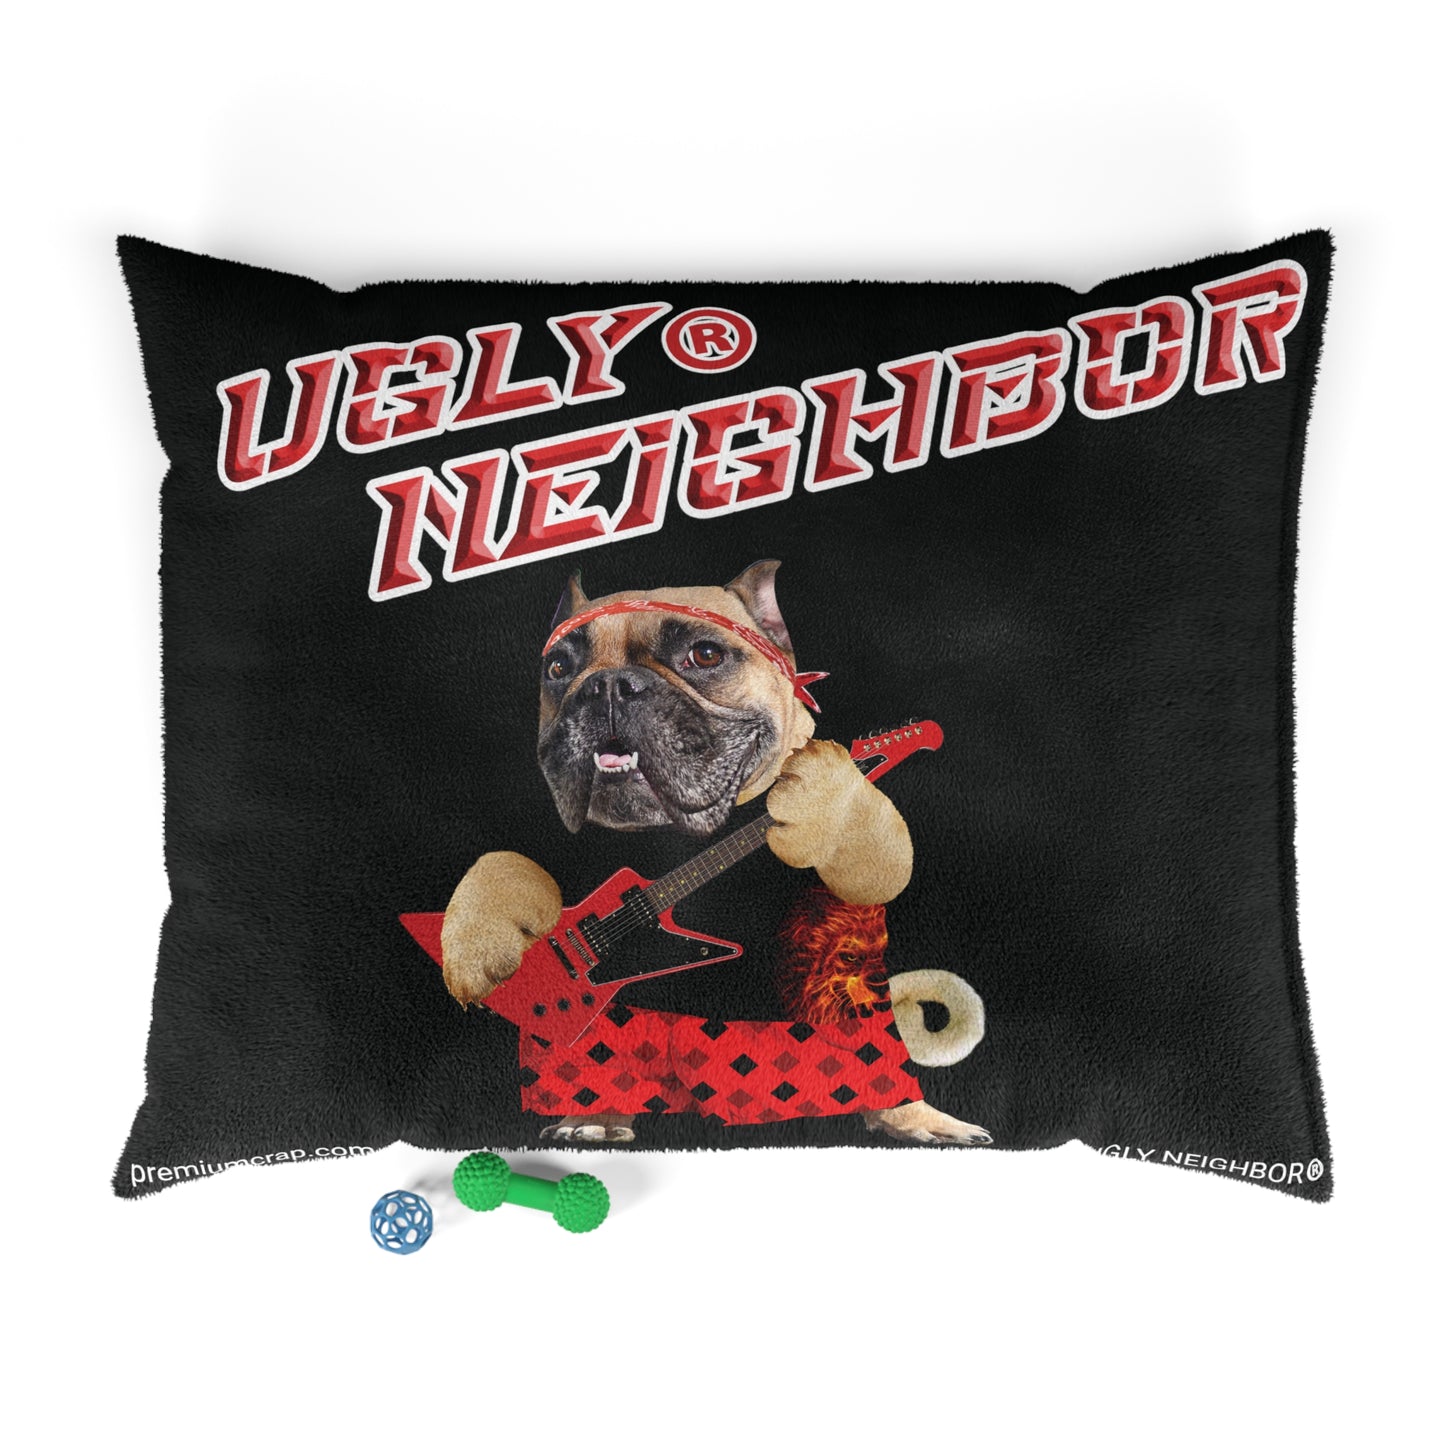 Ugly Neighbor II Pet Bed